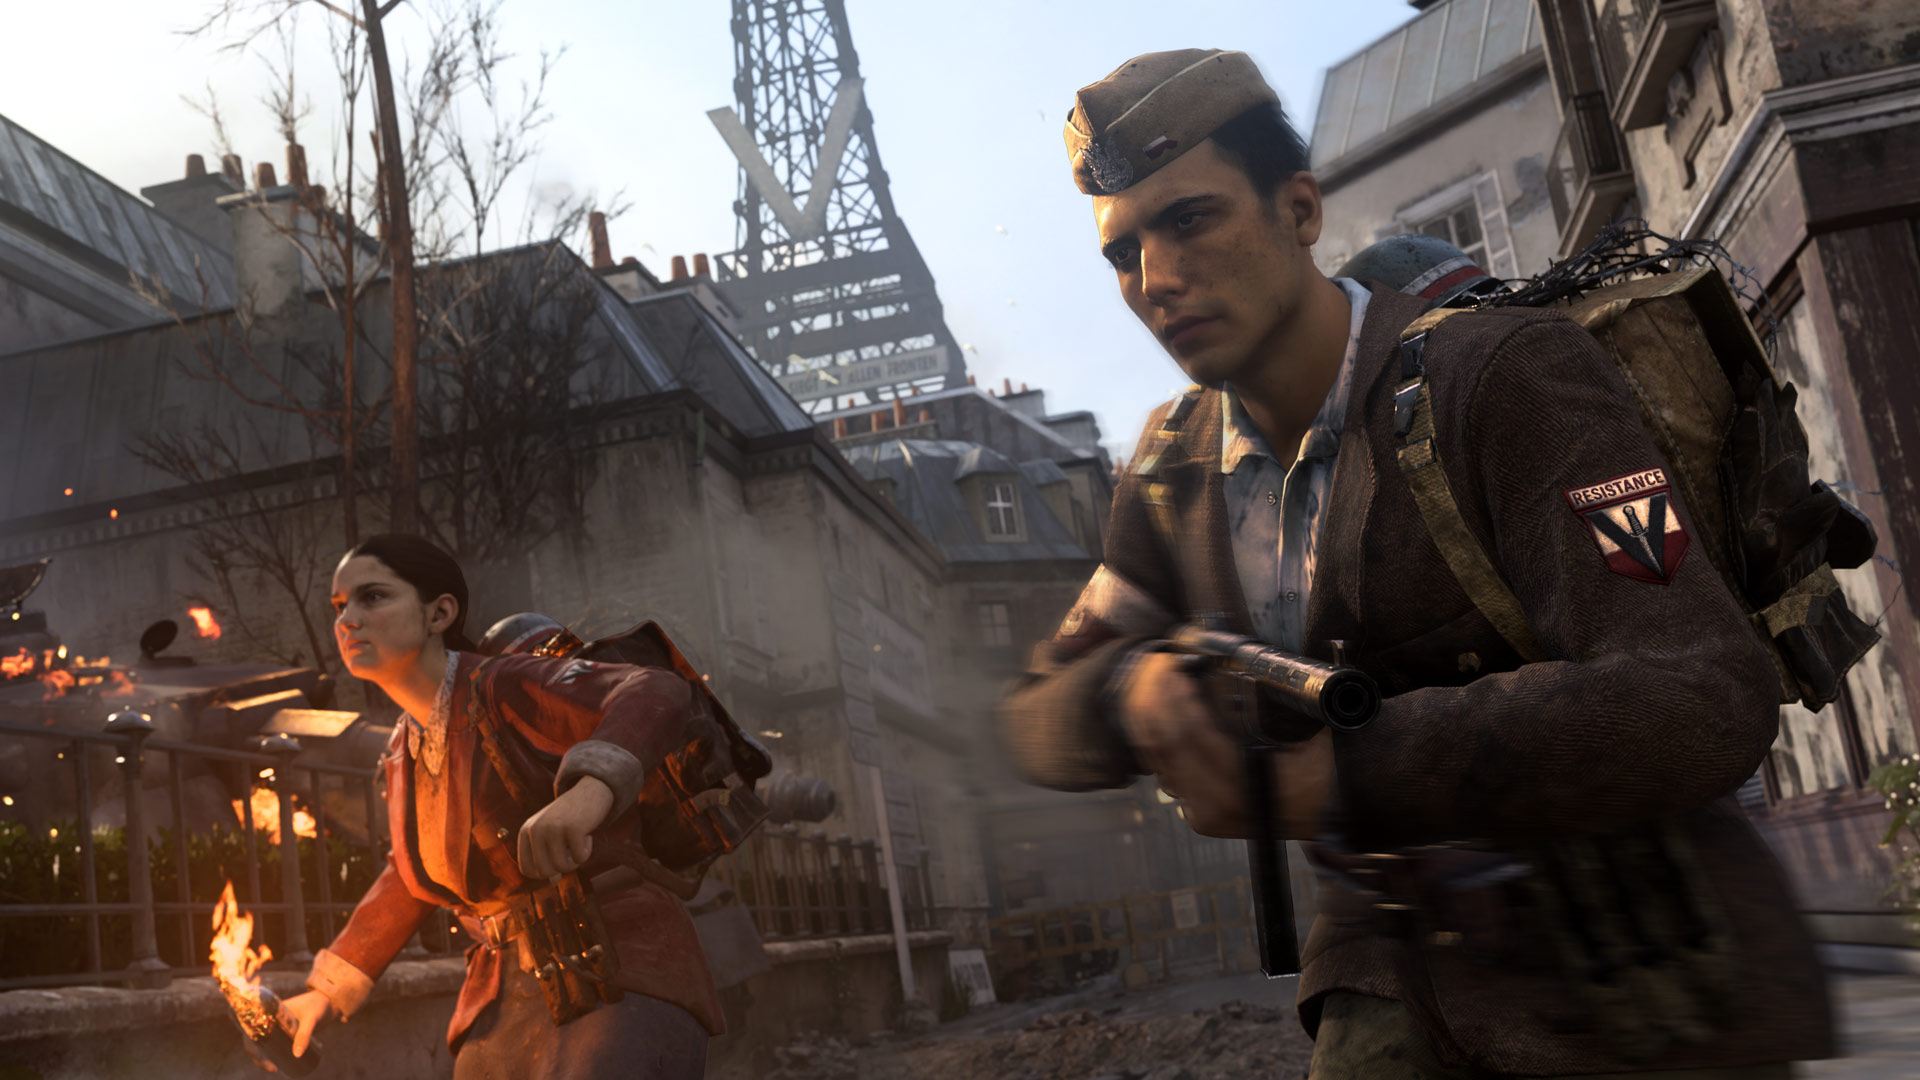 Call of Duty: WWII tem multiplayer liberado no Steam nos próximos